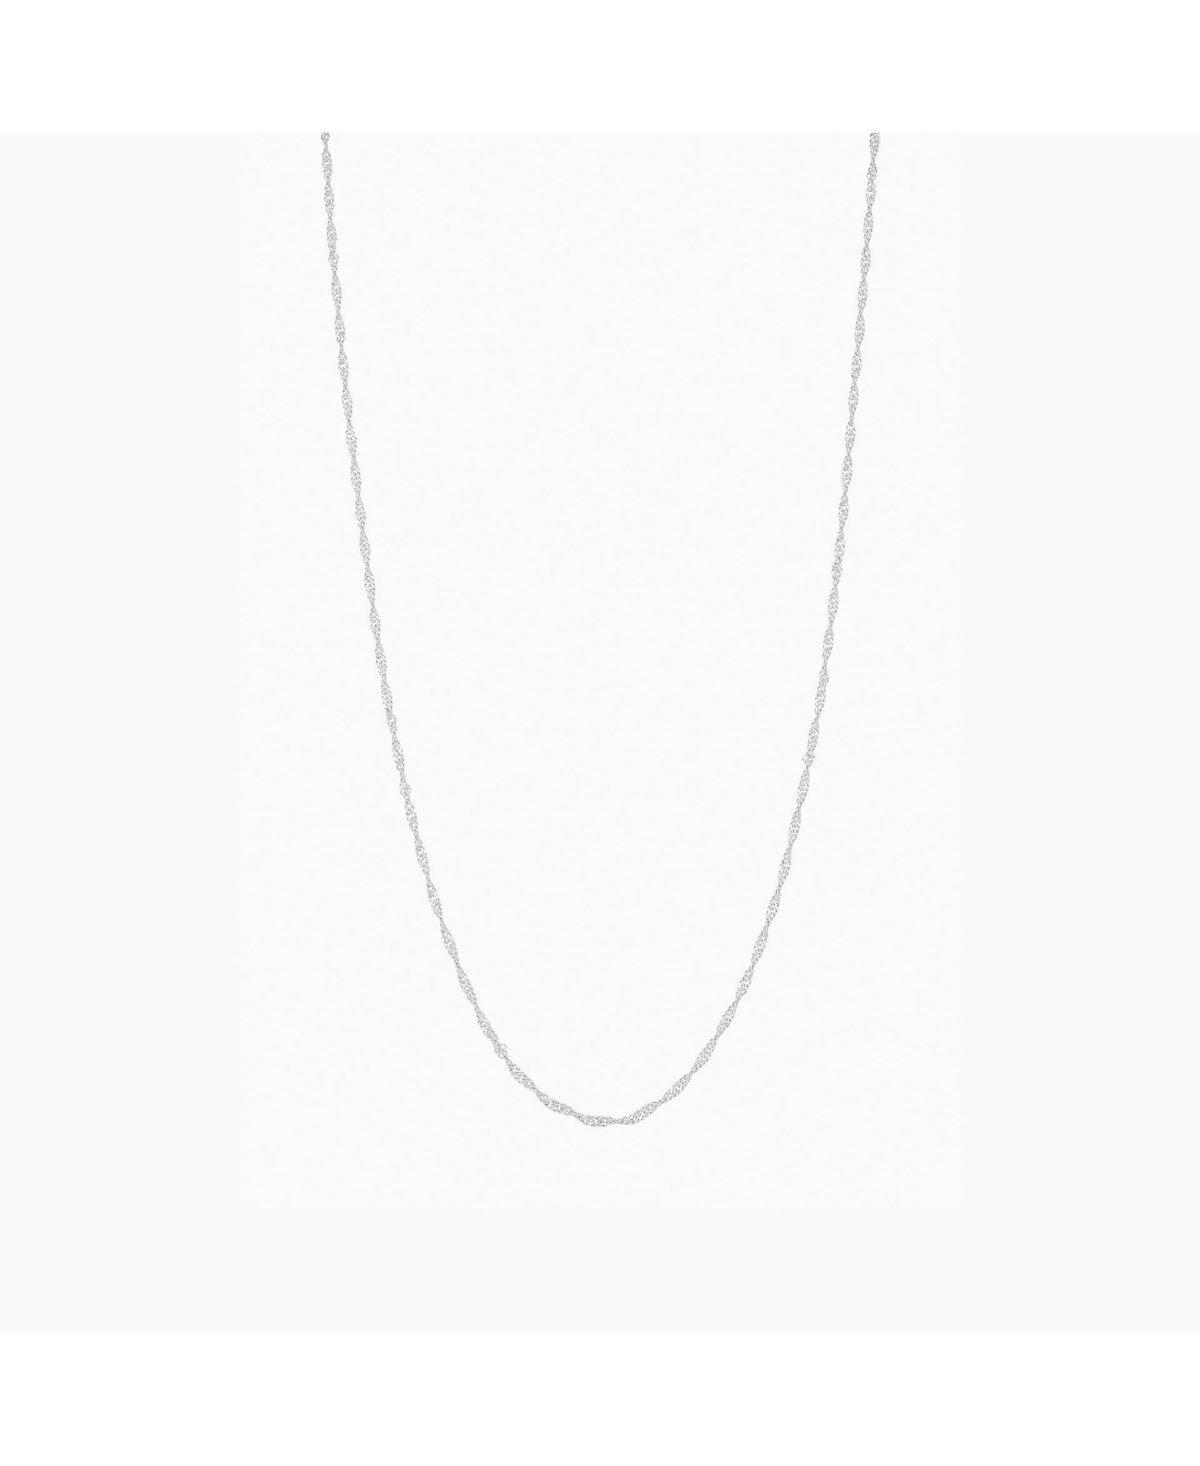 Ashley Basic Chain Necklace - White gold